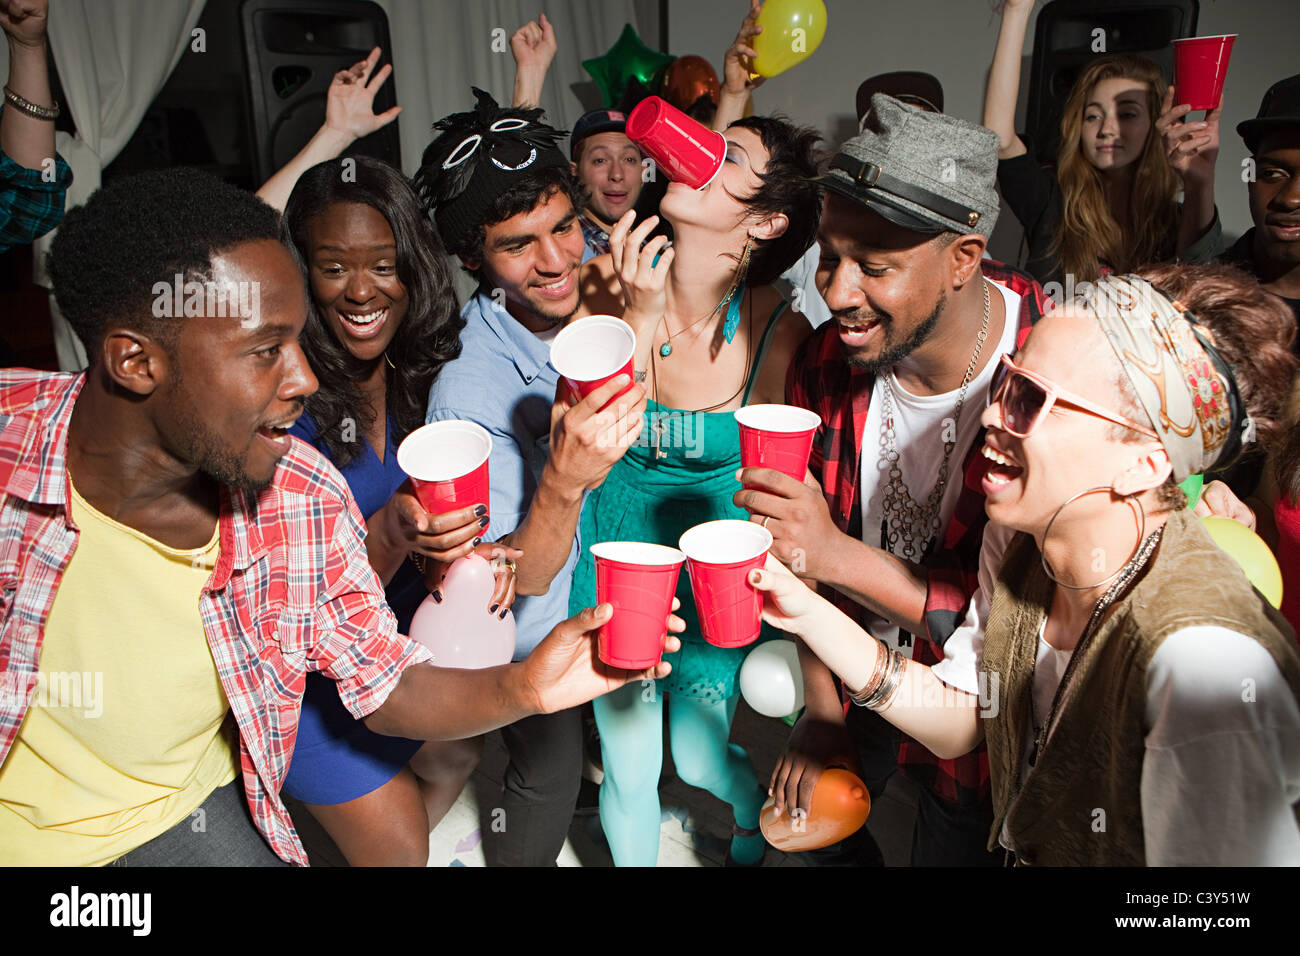 Les jeunes avec des verres en plastique at party Banque D'Images